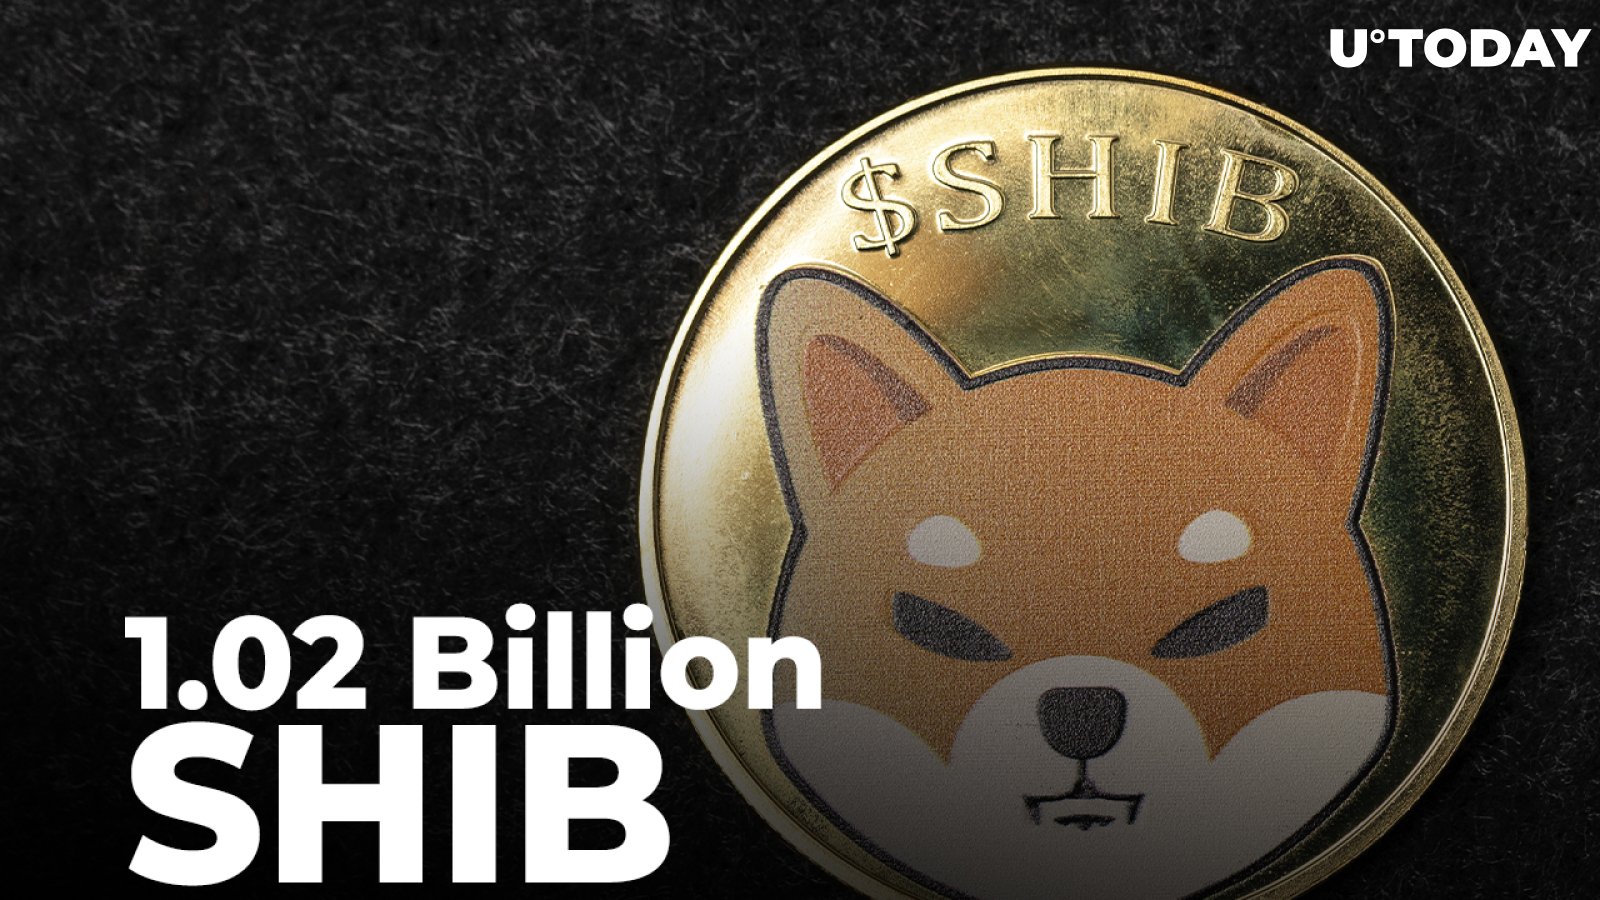 1.02 Billion SHIB Burned, 244.5 Million Added to Burn Pot for April 15: Details